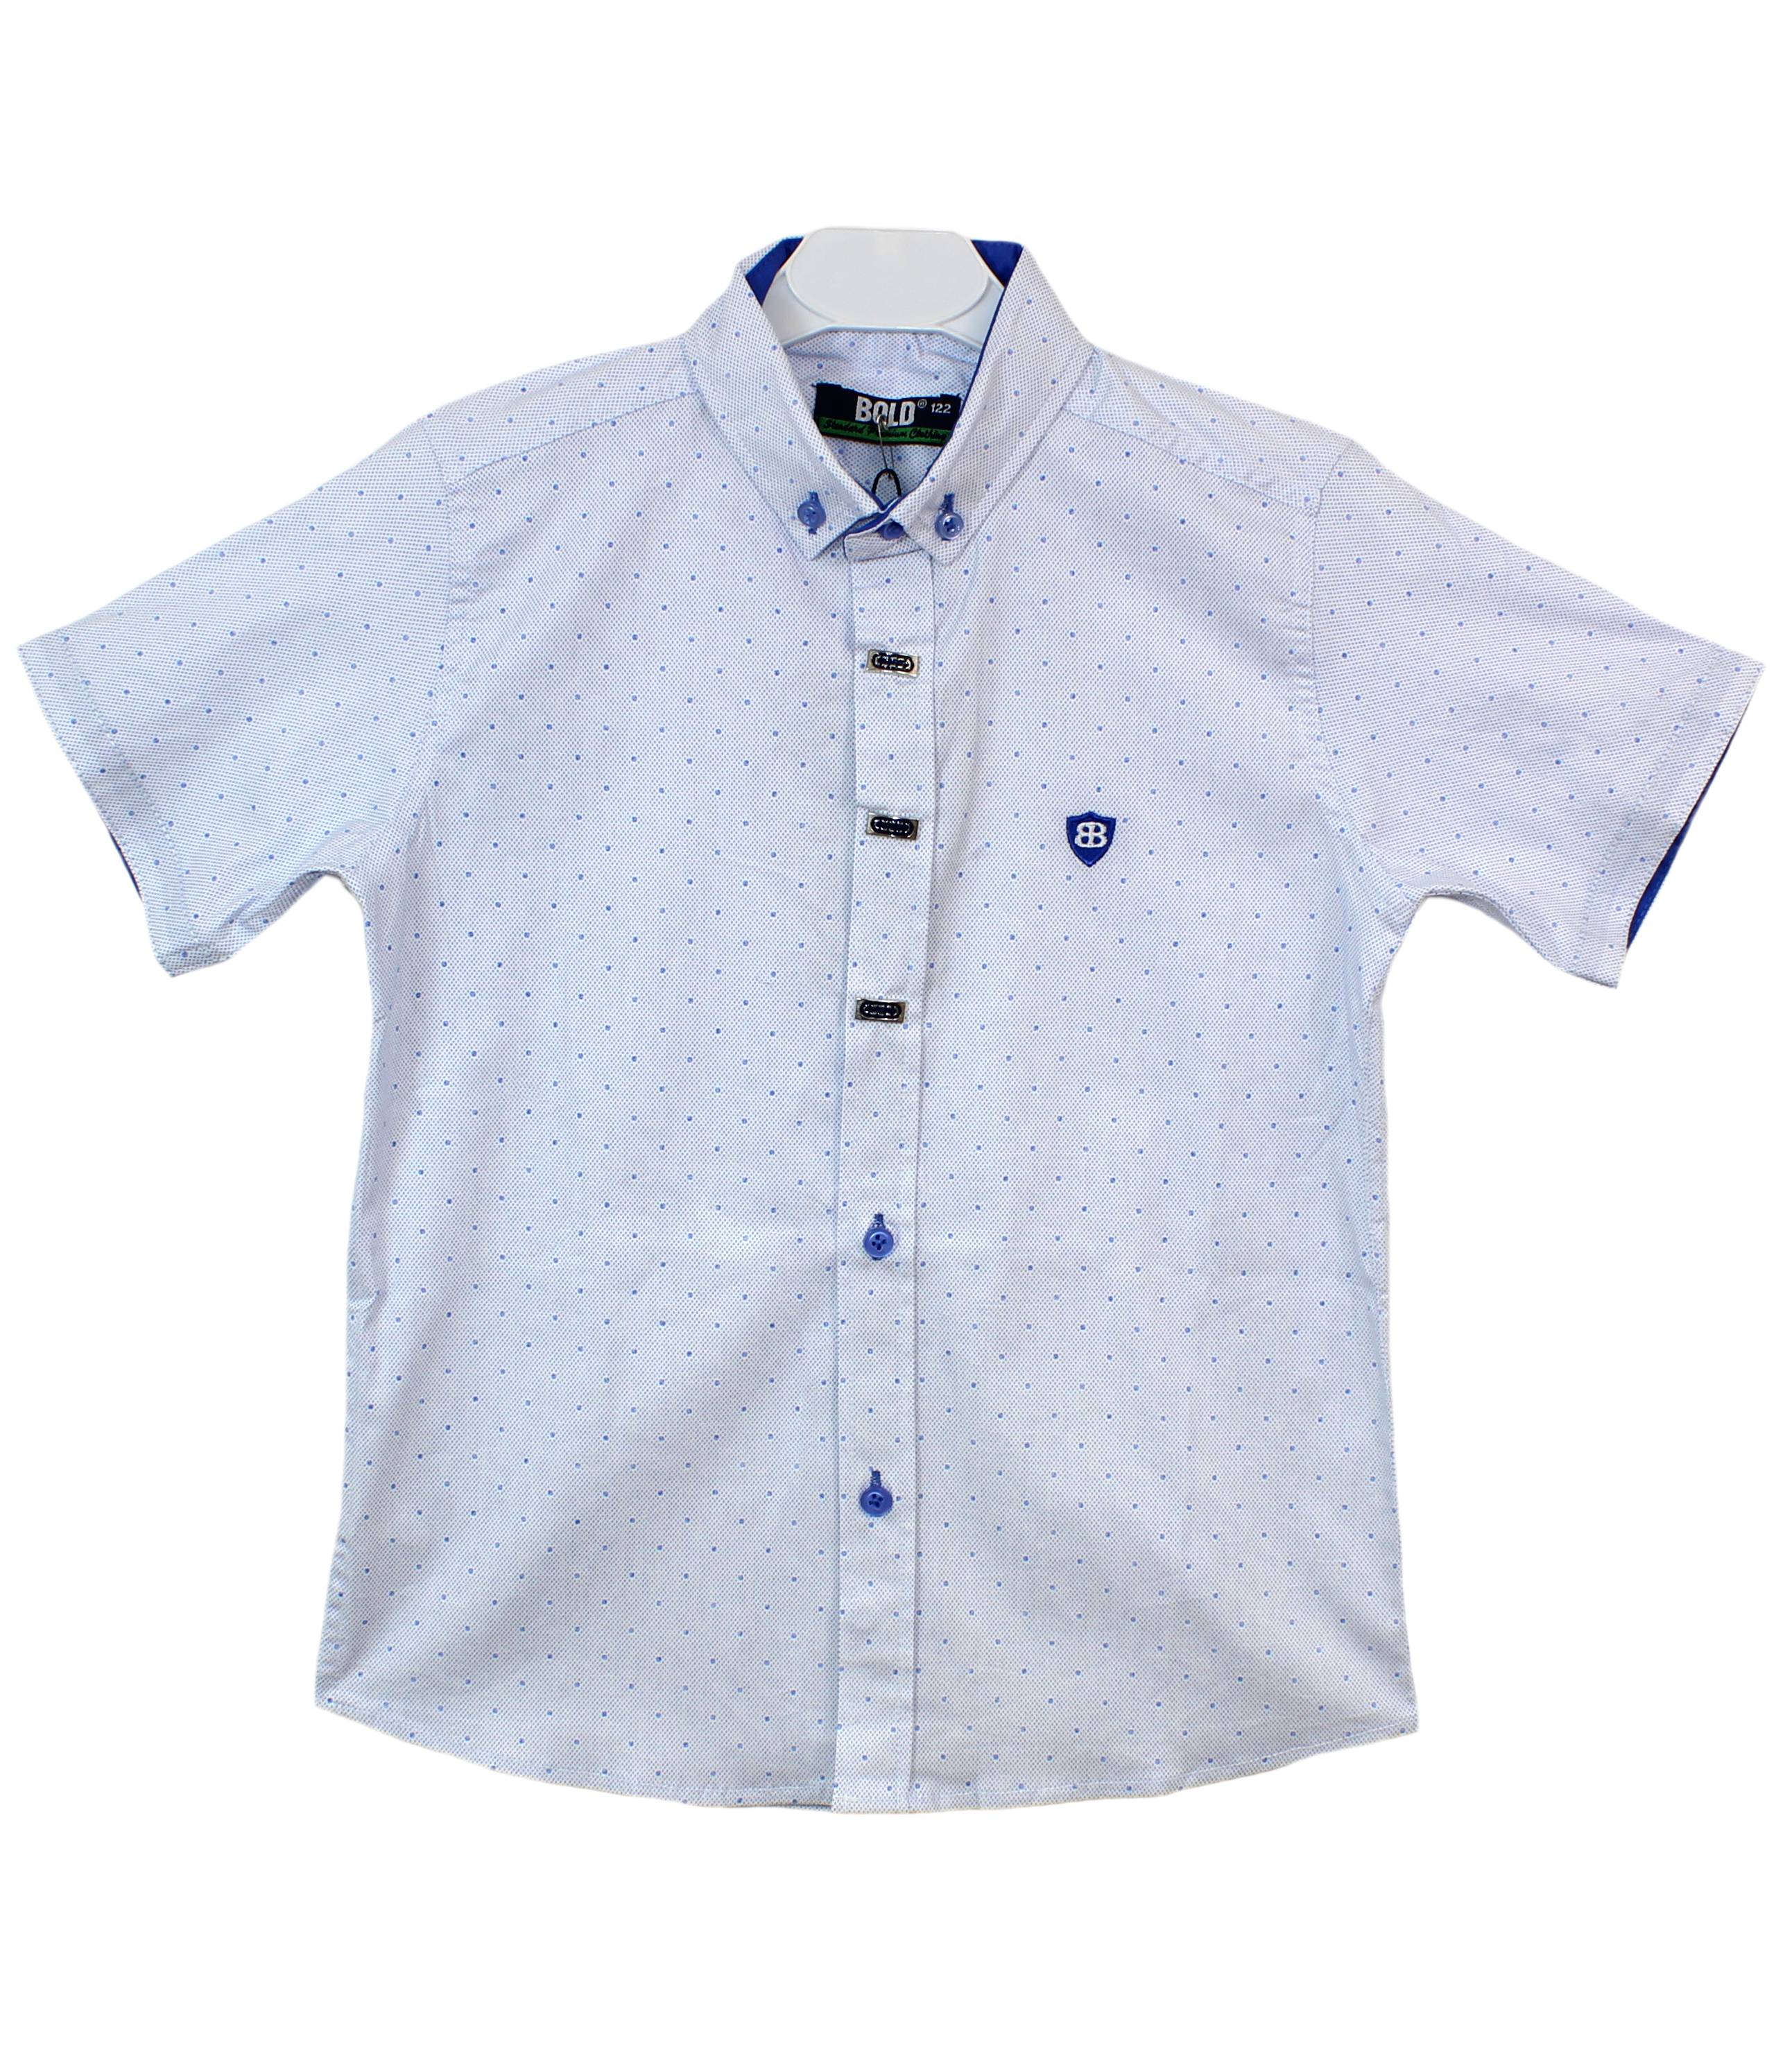 модная детская одежда 145001 рубашка для мальчика турция